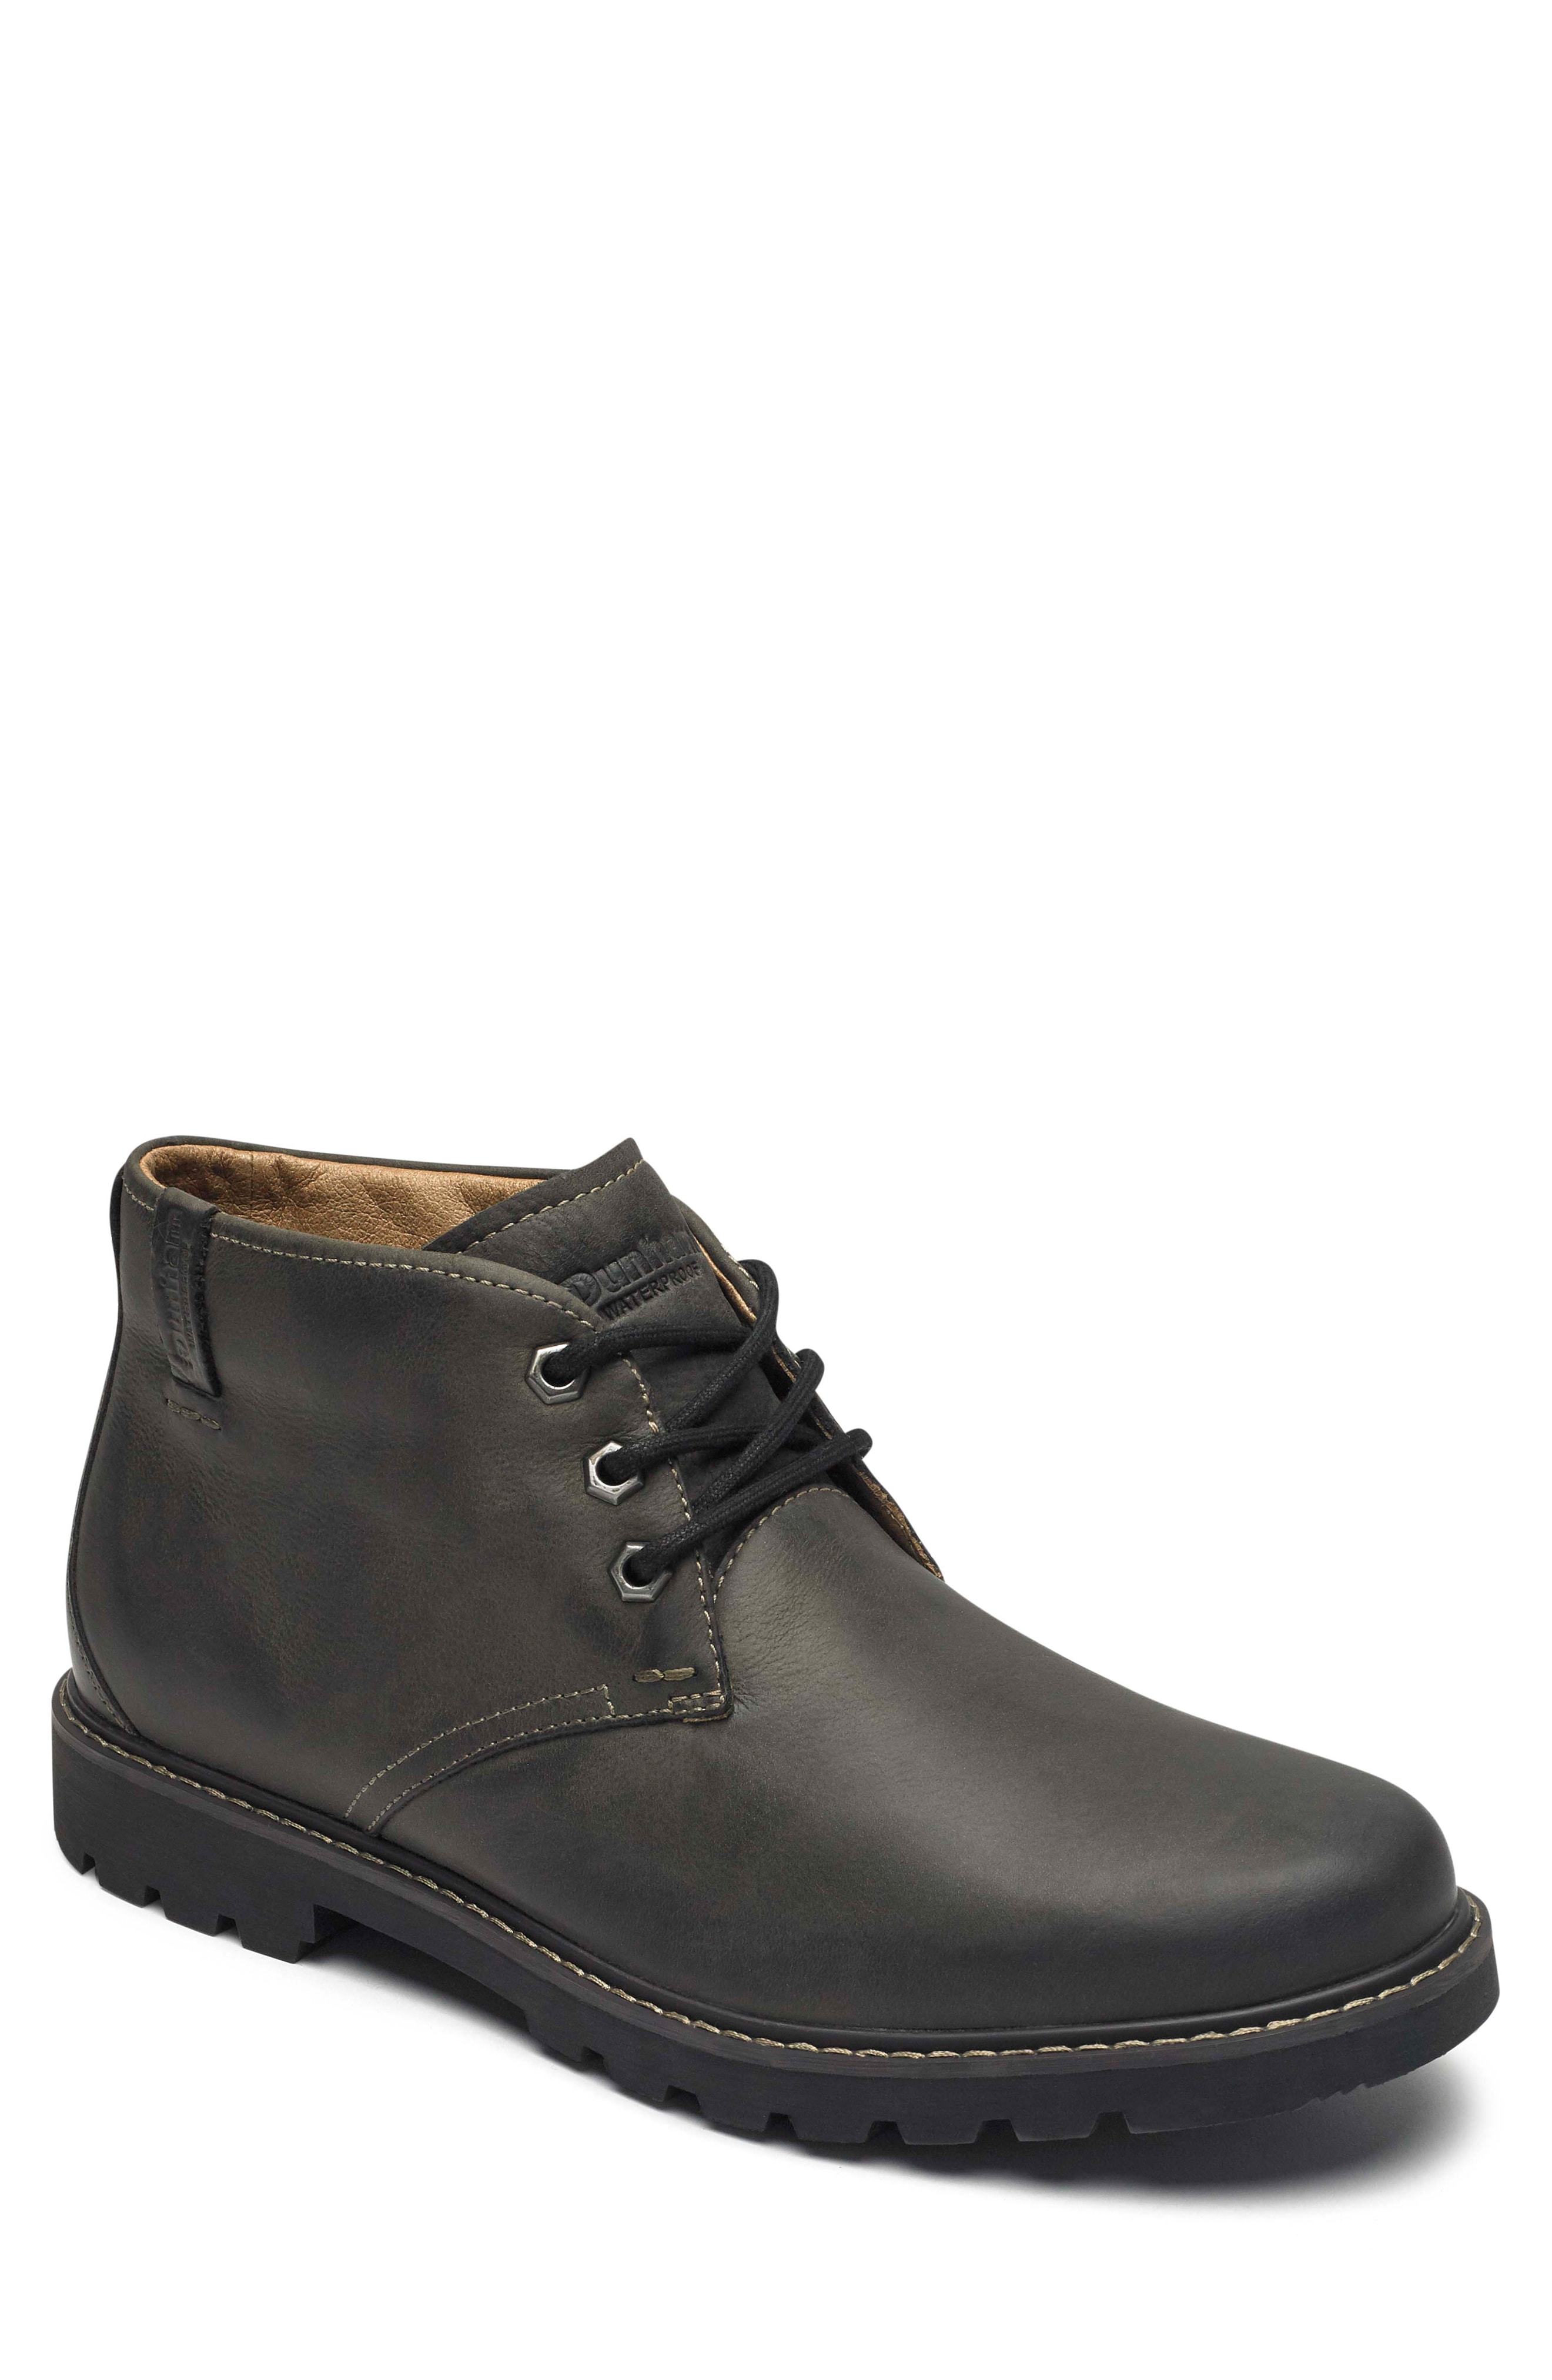 Men’s Dunham Royalton Chukka Boot, Size 11 EE – Grey | The Fashionisto